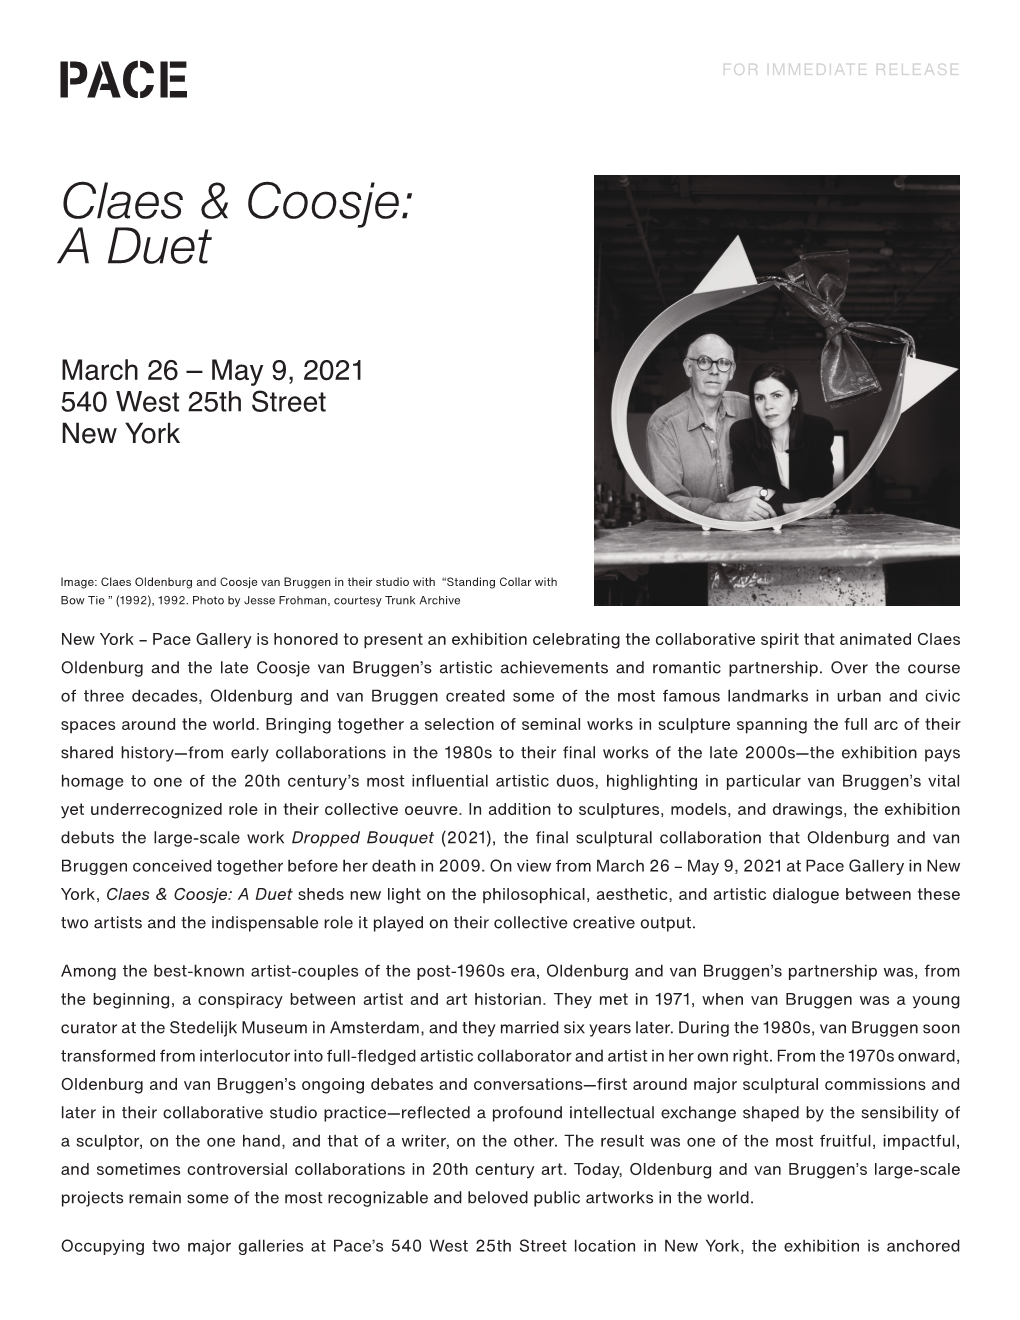 Claes & Coosje: a Duet